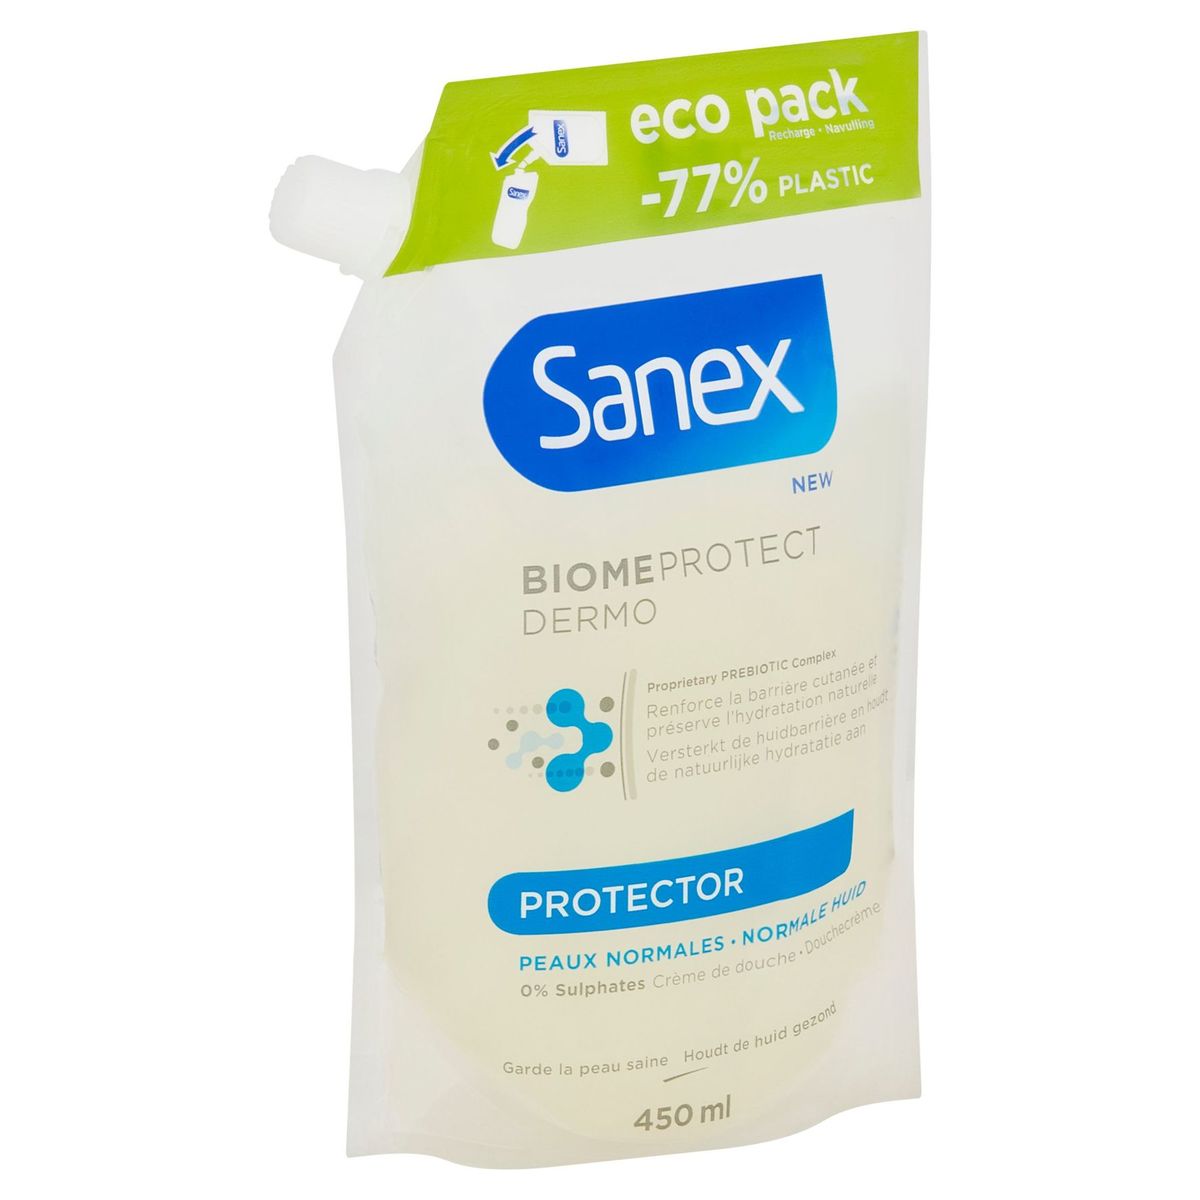 Sanex Biome Protect Dermo Protector Crème de Douche 450 ml